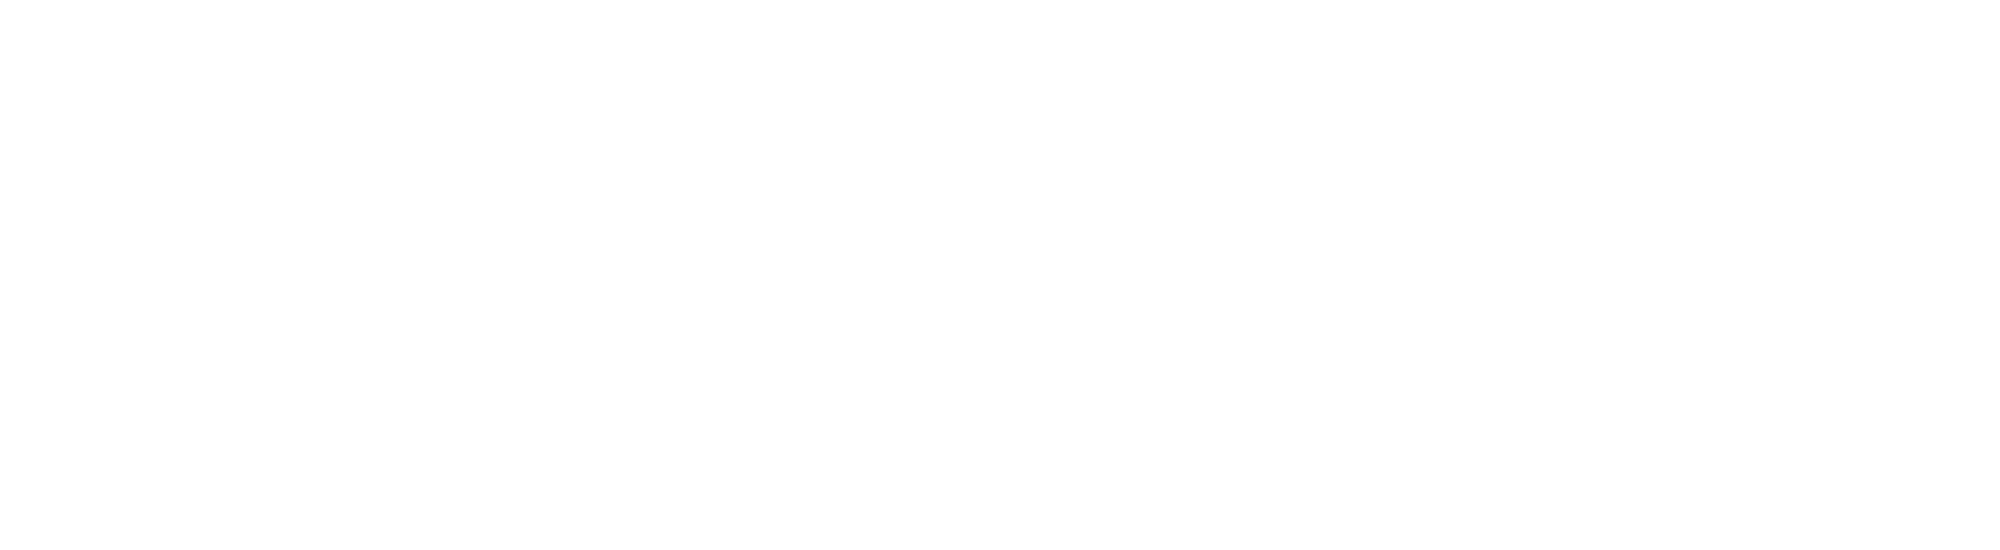 banner_business_full